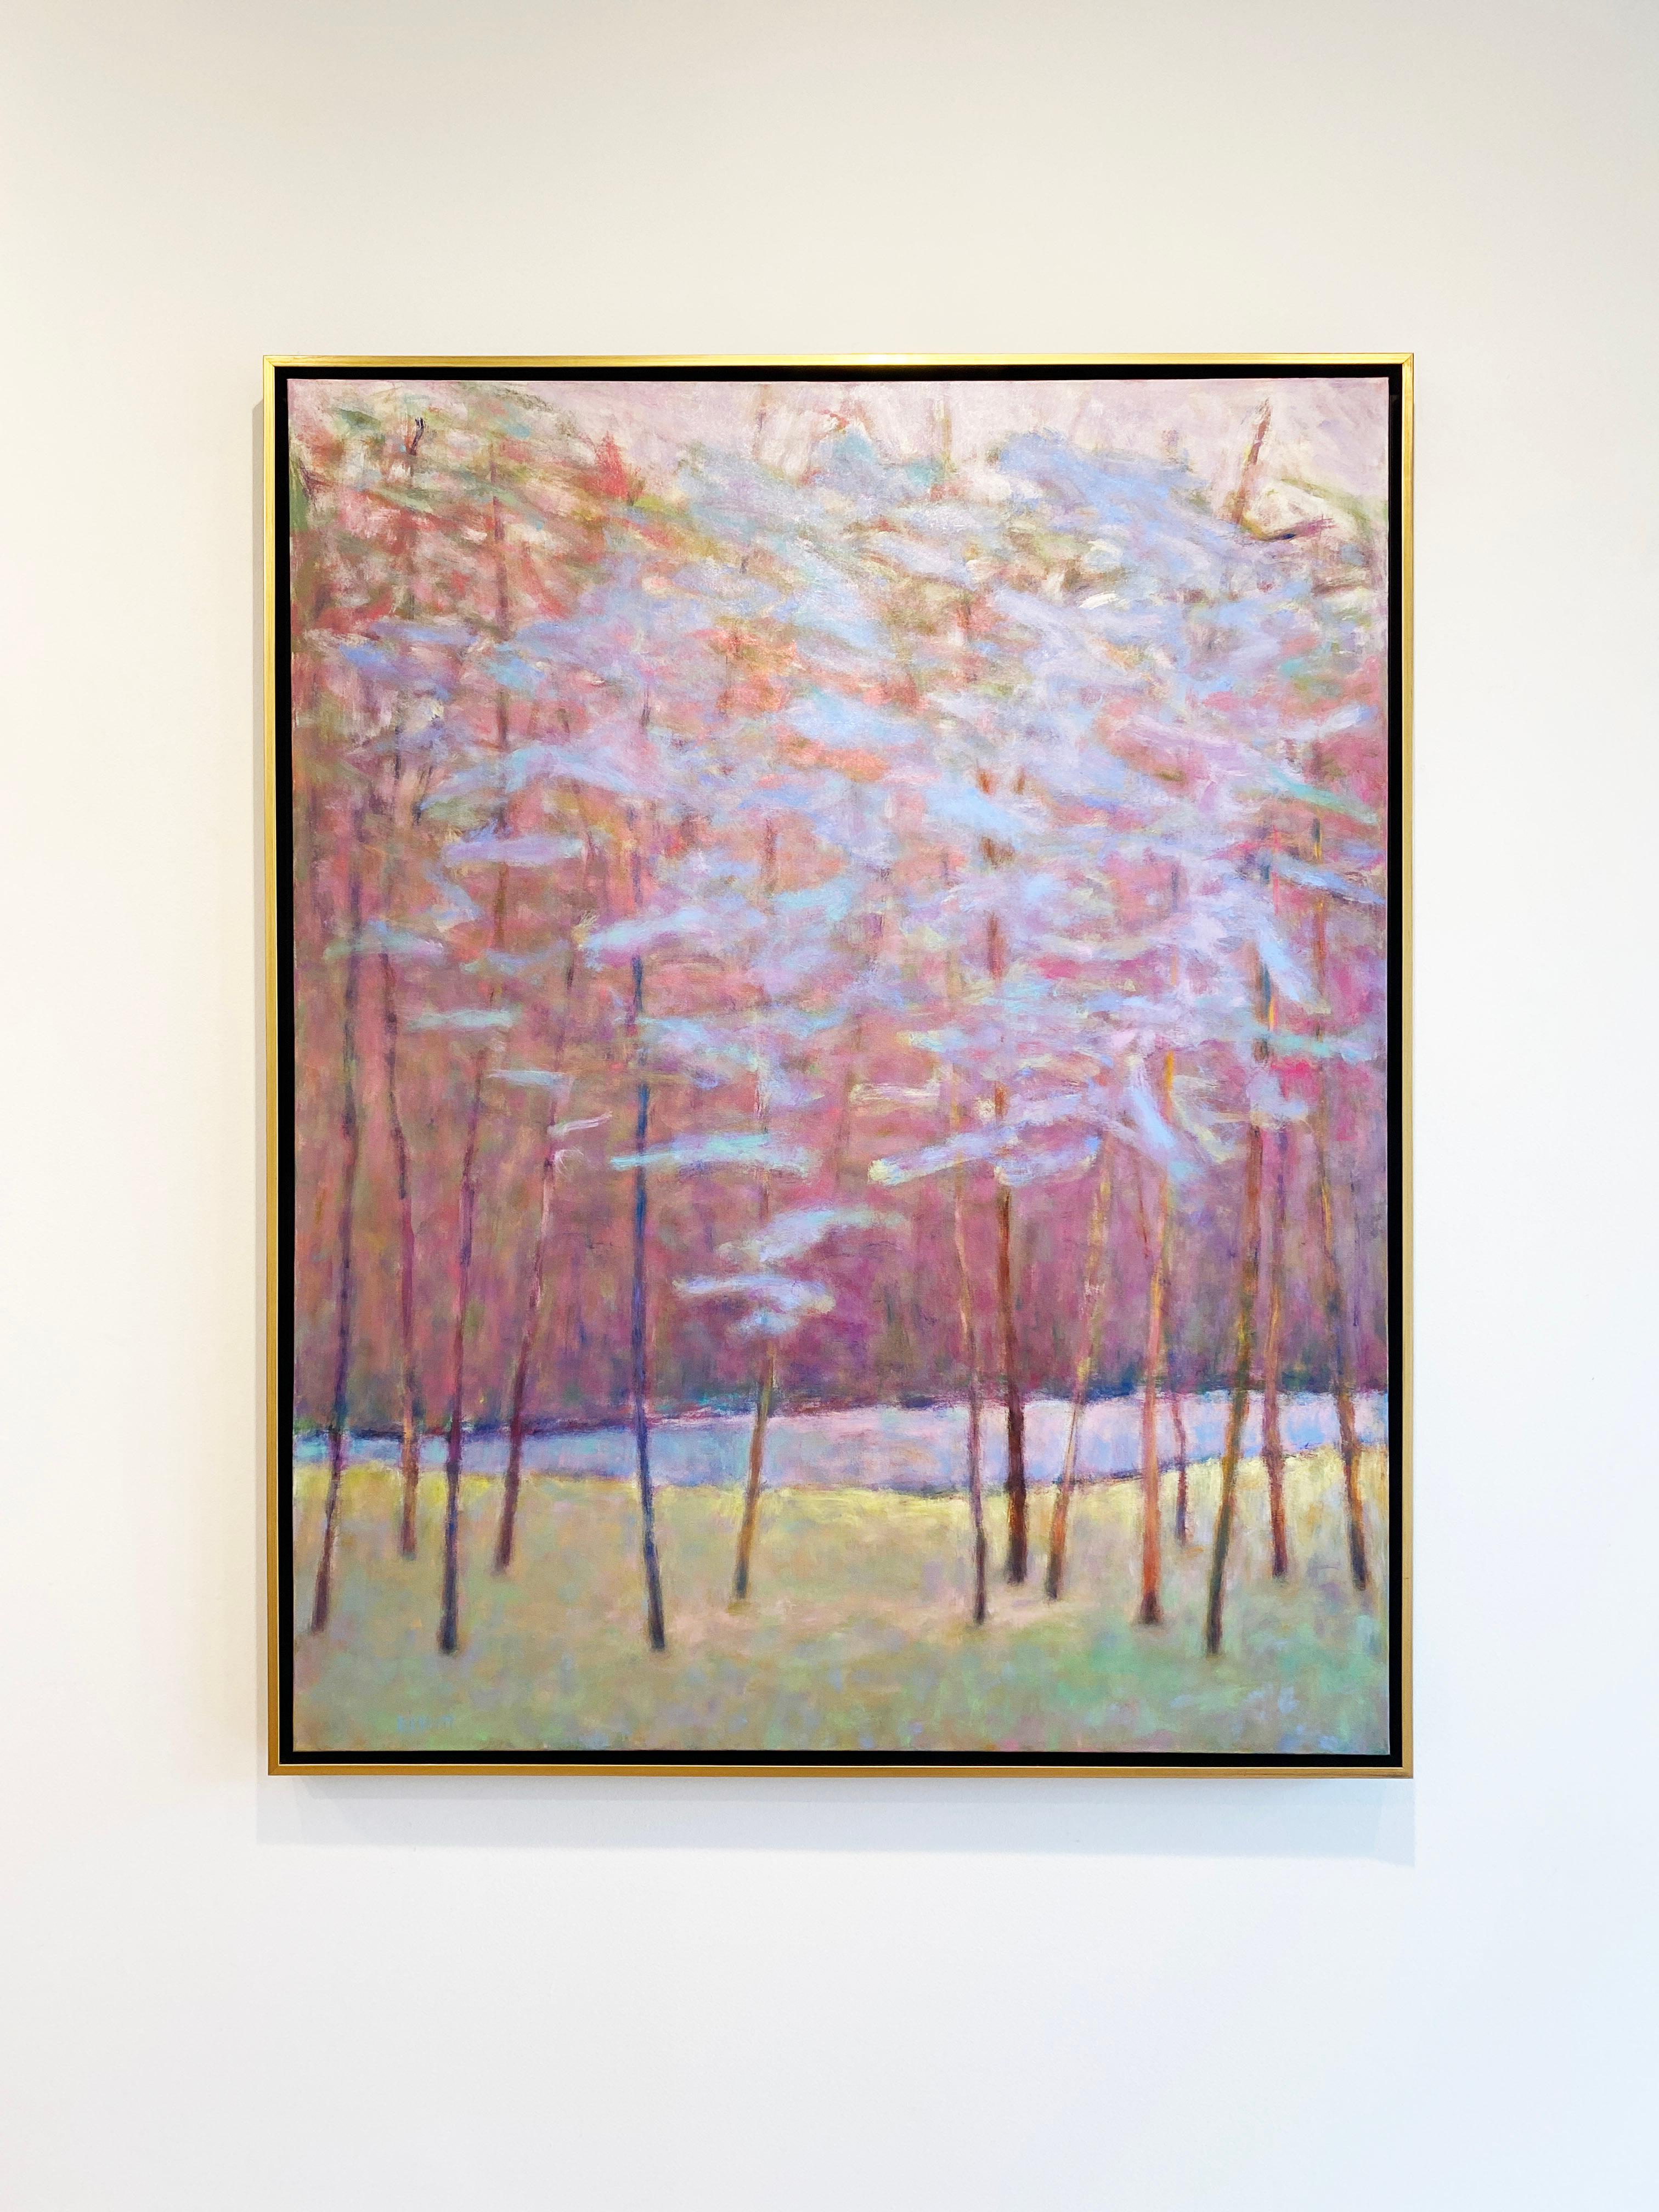 'Soft Tones at the Creek' 2022 des amerikanischen Künstlers Ken Elliott. Öl auf Leinwand, 50 x 40 Zoll. / Rahmen: 51,5 x 41,75 in. Dieses Gemälde eines Waldes und Bodens besteht aus Farben in Hellblau, Grün, Rosa, Lila und Braun. Gerahmt in einem